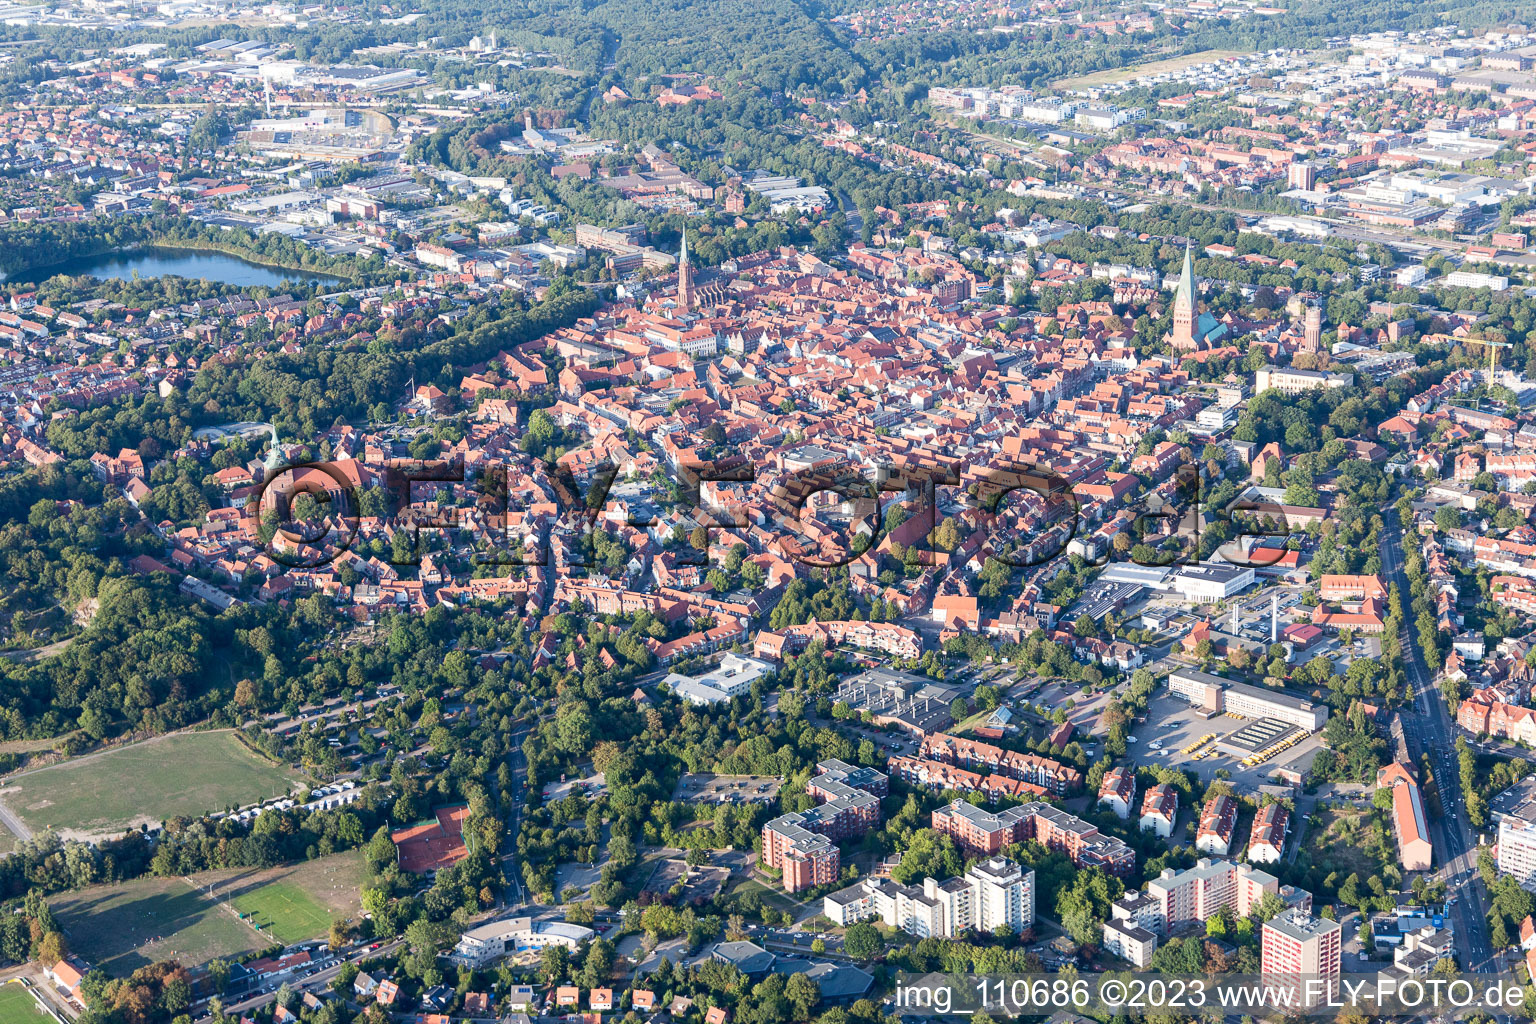 Schrägluftbild von Altstadtbereich und Innenstadtzentrum in Lüneburg im Bundesland Niedersachsen, Deutschland